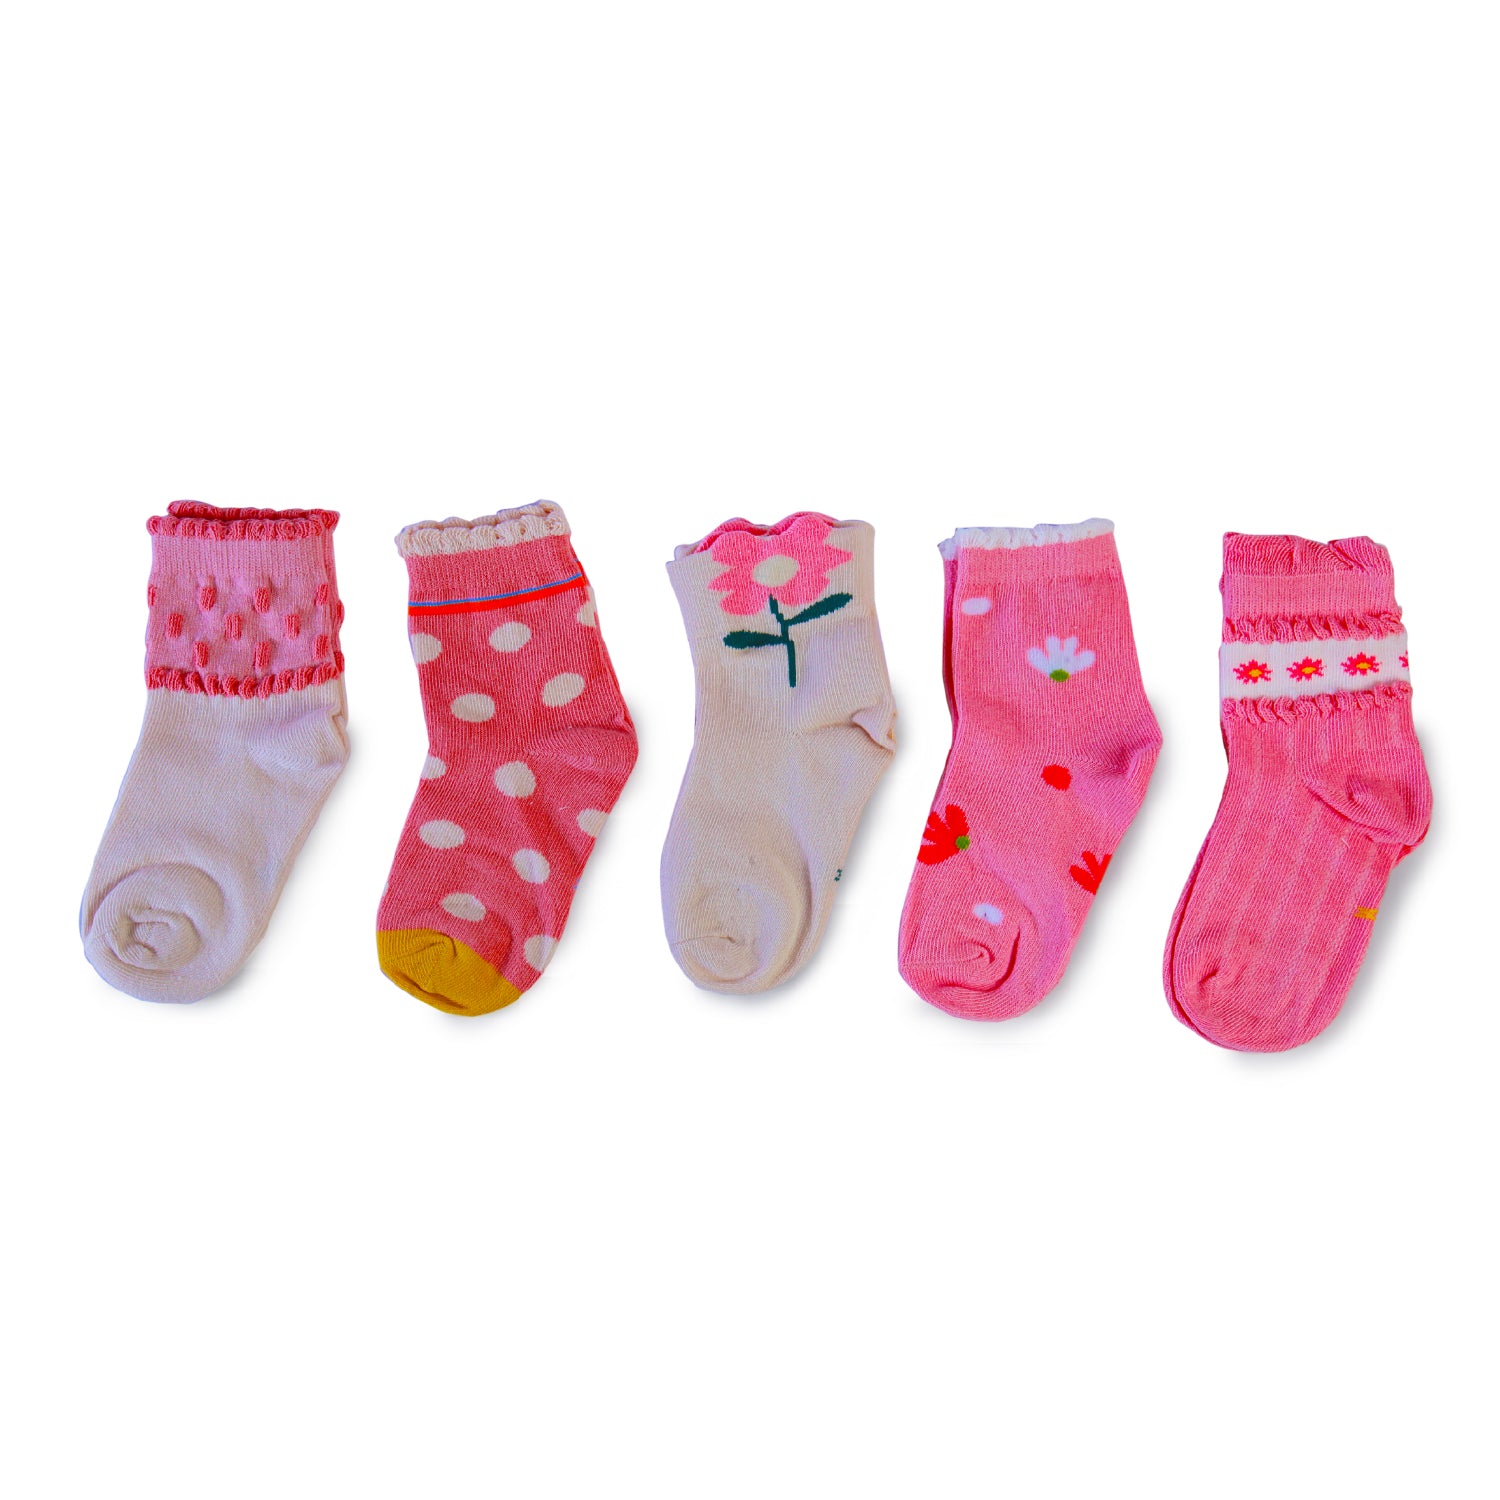 Floral Pastel Shades 5 Pk Socks - Baby Moo